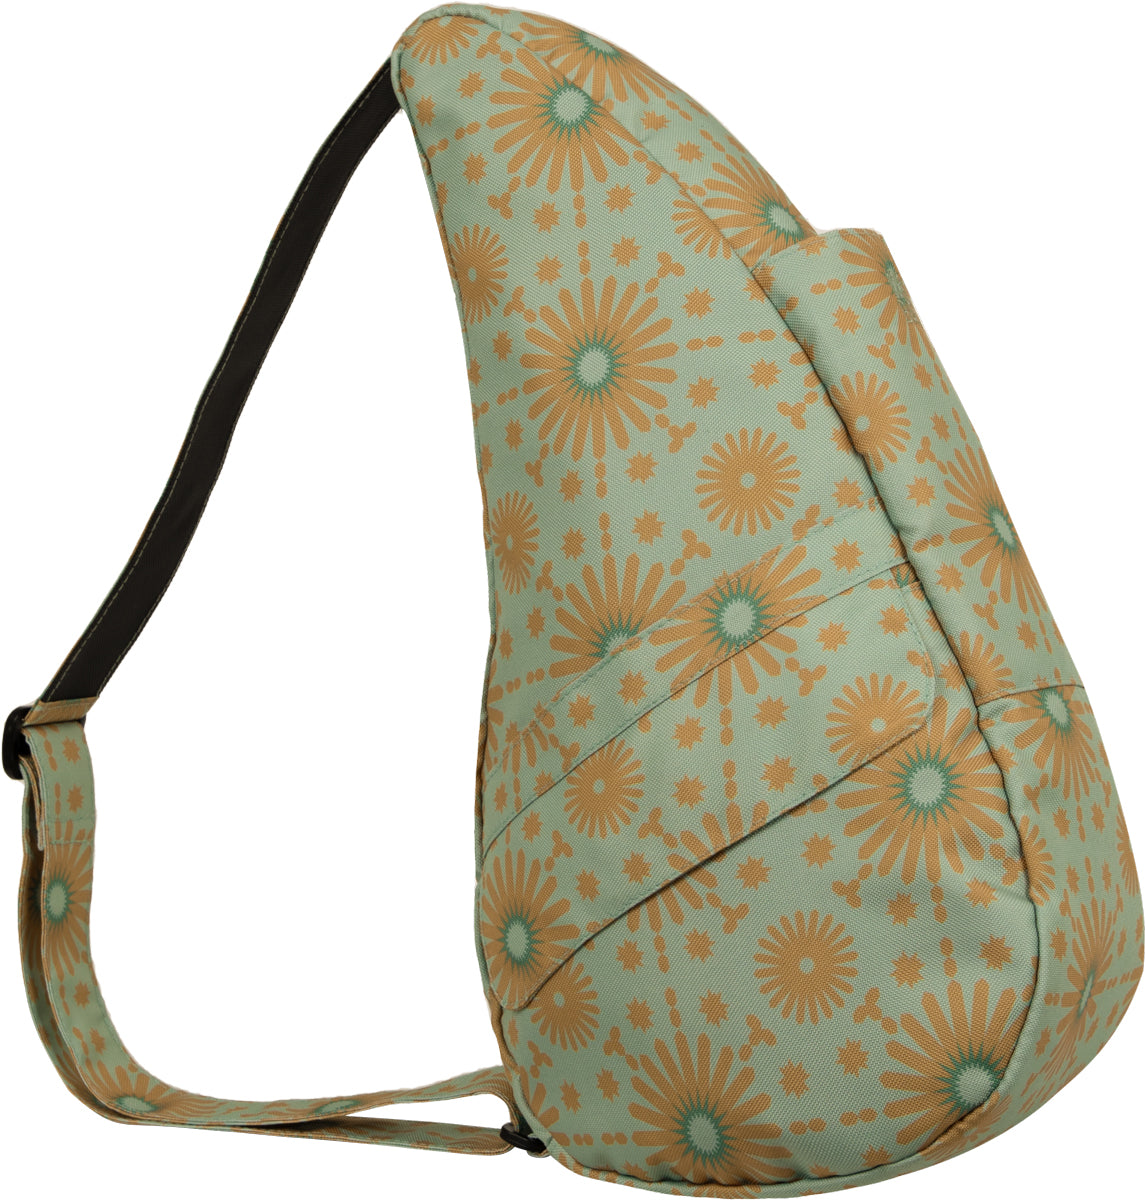 AmeriBag Small Healthy Back Bag Tote Prints and Patterns (Talavera Jade)